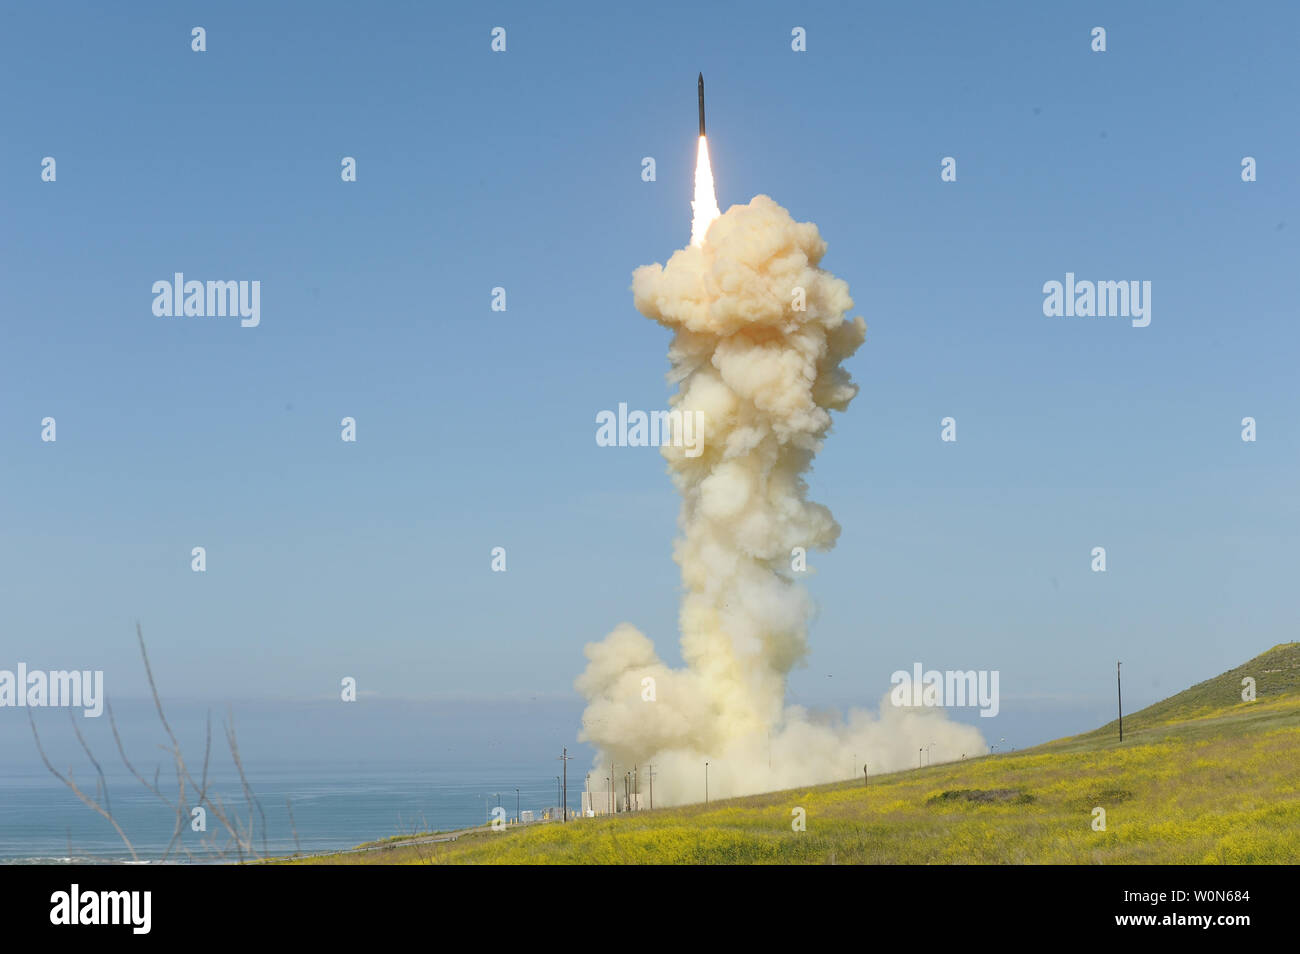 Die 'lead' Ground-based Interceptor aus der Vandenberg Air Force Base, Kalifornien, am 25. März 2019 gestartet wurde, wird in der ersten Salve engagement Test einer Bedrohung - Vertreter ICBM Ziel. Die beiden bodengestützte Abfangraketen (GBI) erfolgreich ein Ziel aus der Ronald Reagan Ballistic Missile Defence Test Site auf Kwajalein Atoll gestartet abgefangen. Foto von Missile Defense Agency/UPI Stockfoto